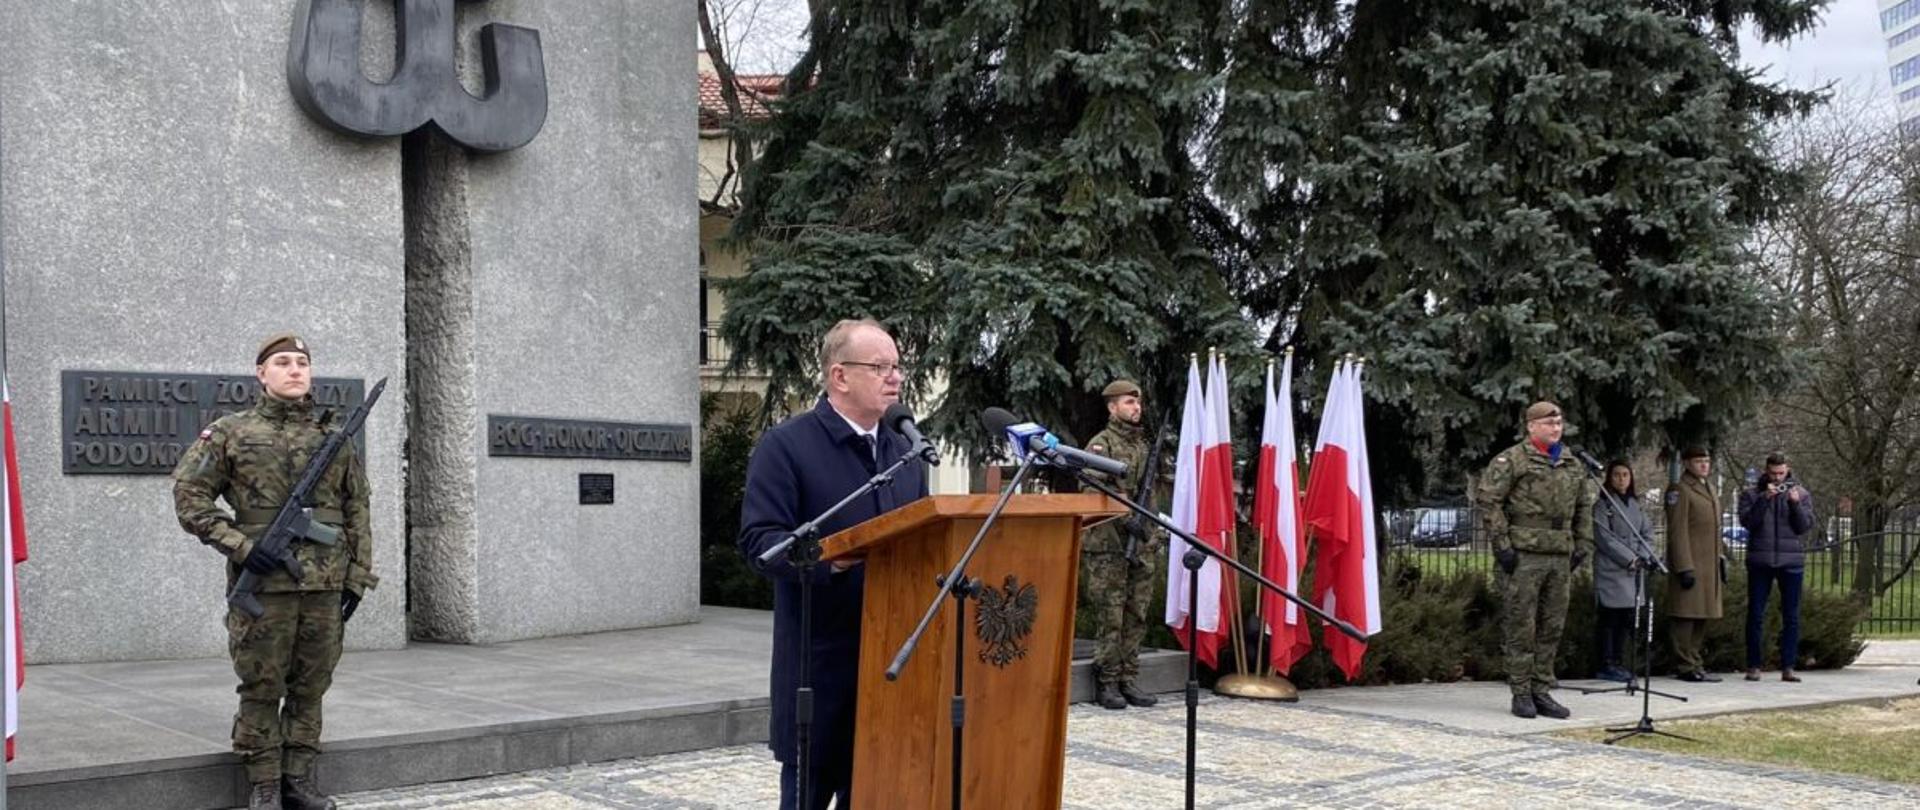 I wicewojewoda podkarpacki Wiesław Buż przemawia podczas uroczystości z okazji 82 rocznicy powstania Armii Krajowej